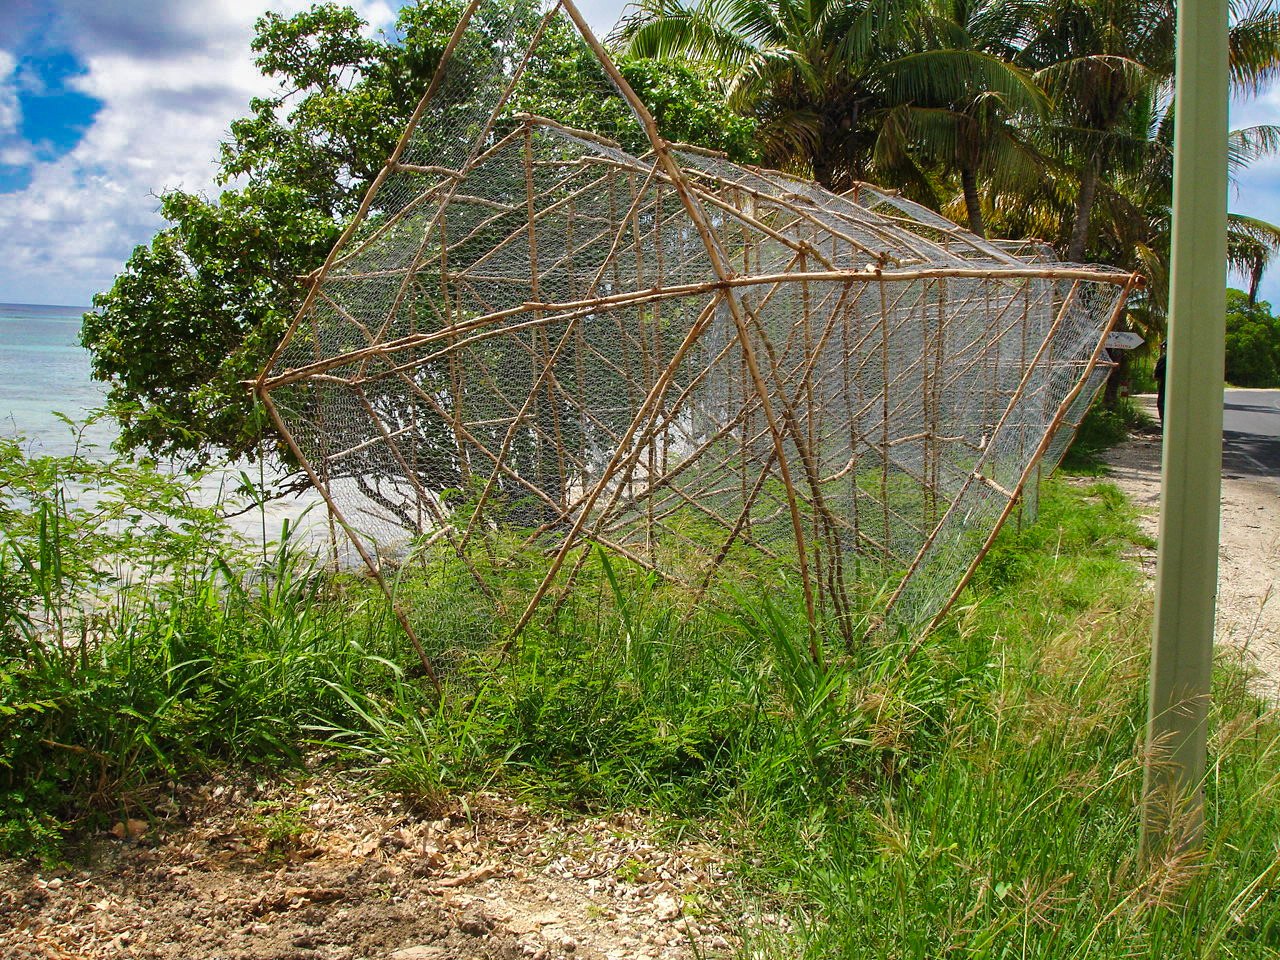 5 – Fishing traps, Guadeloupe